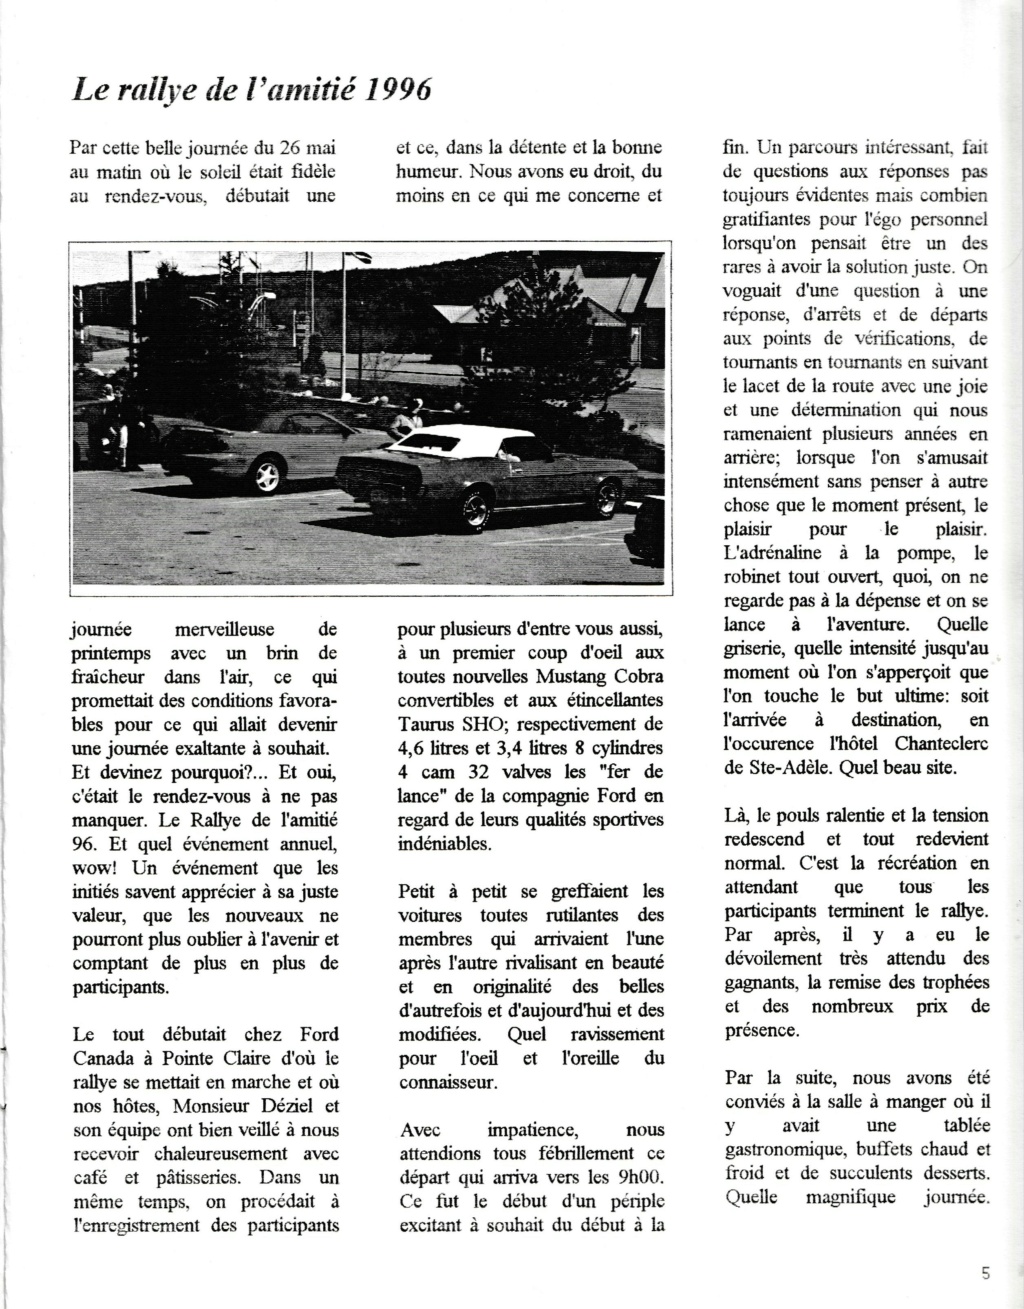 Montréal Mustang dans le temps! 1981 à aujourd'hui (Histoire en photos) - Page 8 Img_2414